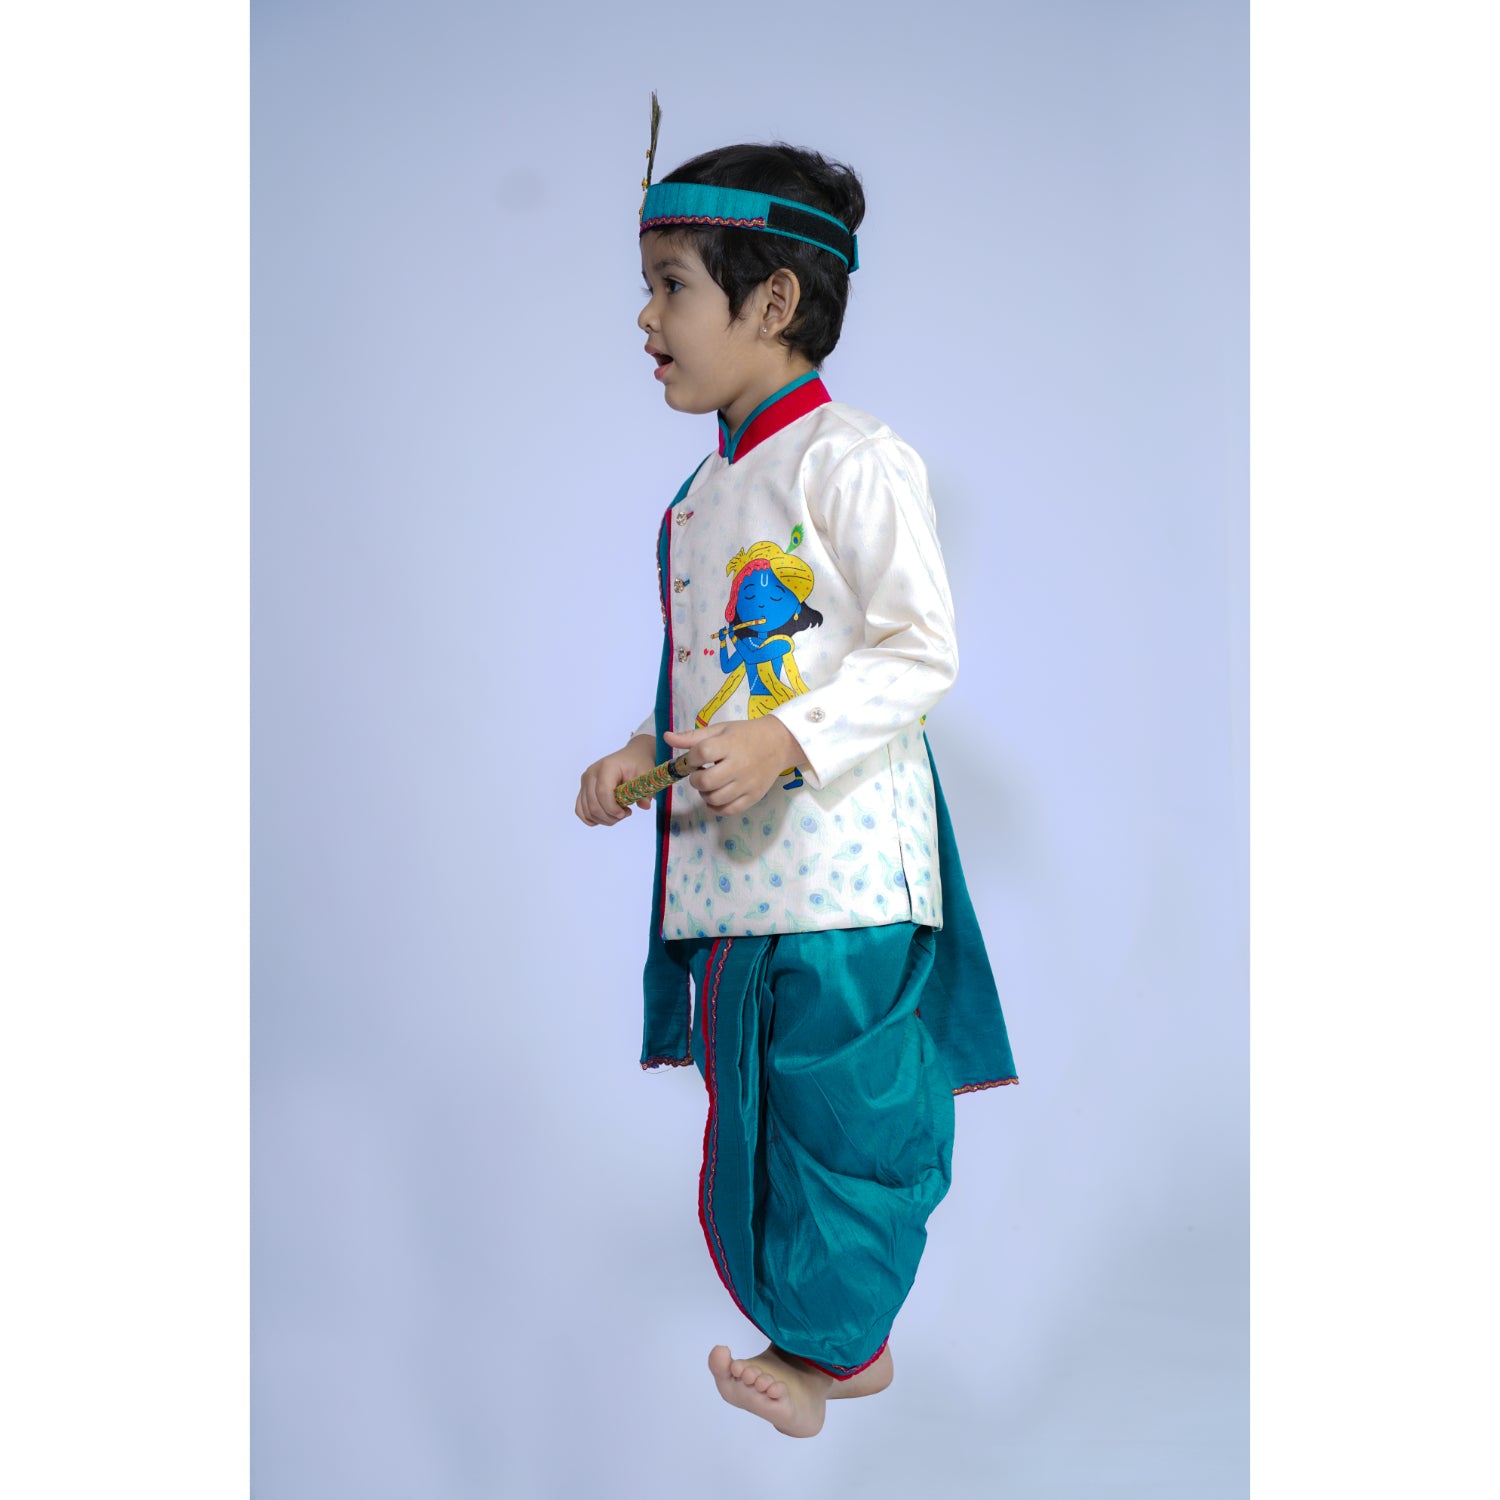 Baby Moo x Kurta Co. Krishna Digital Print Kurta Dhoti Set with Accessories - Premium Plastic Gift Box 5pcs Set - Blue